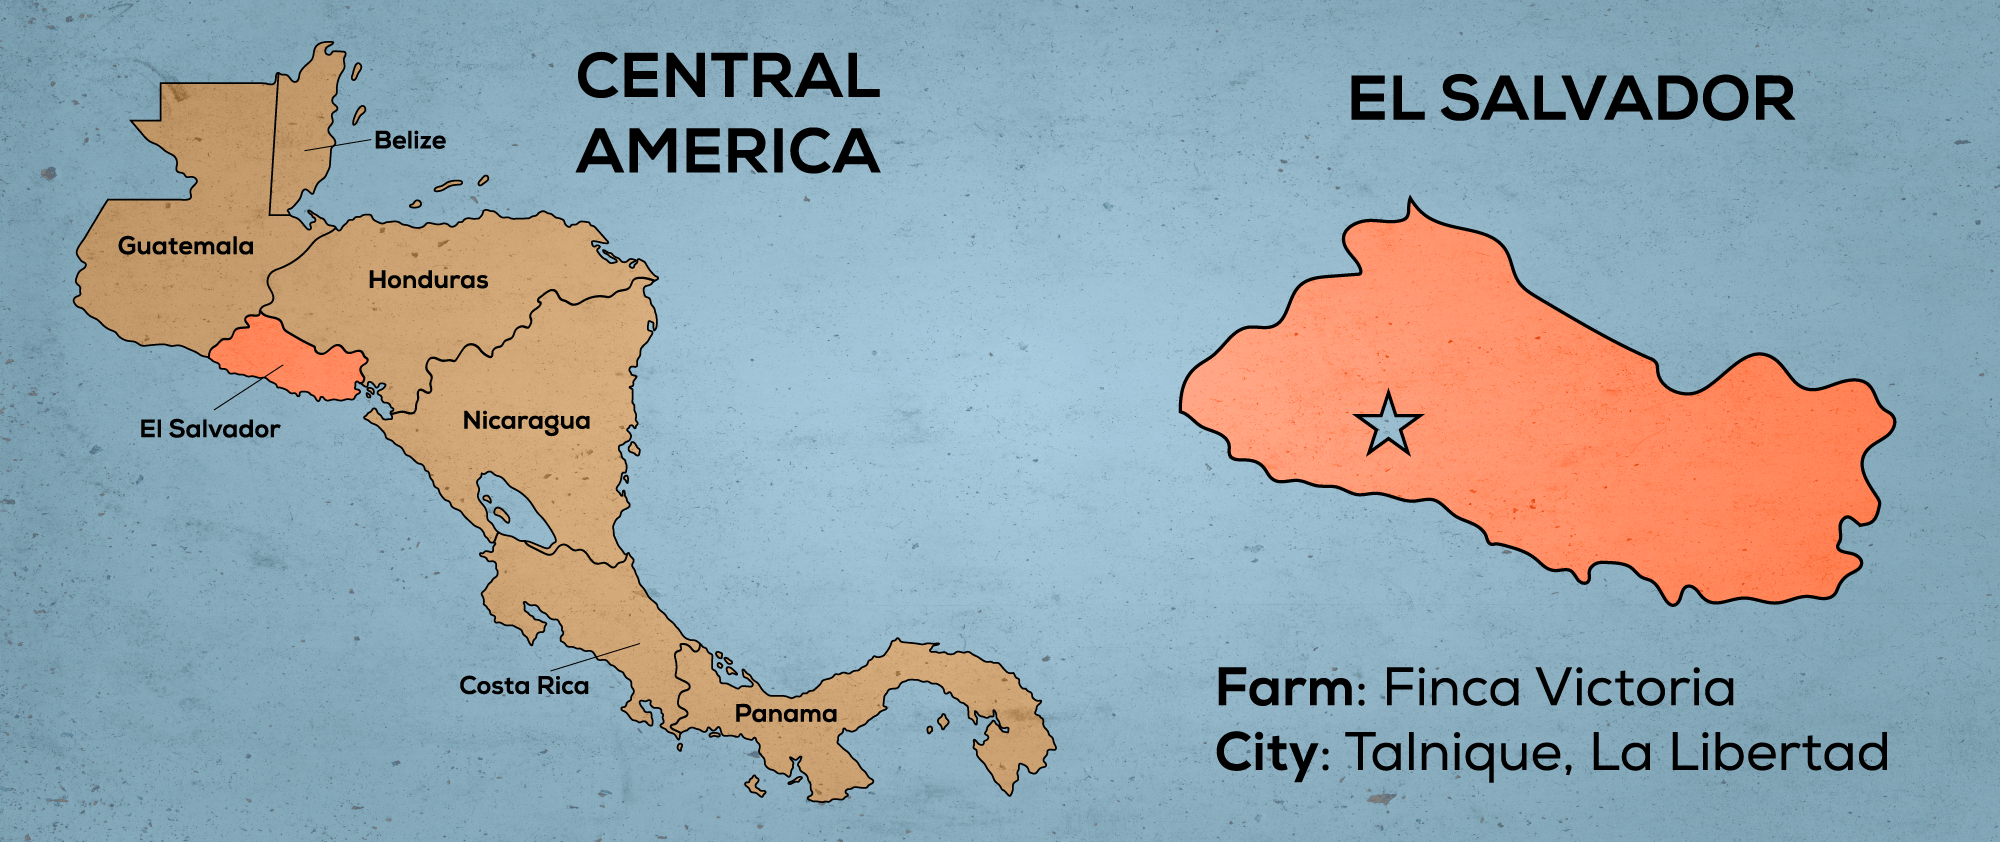 Map of Central America & El Salvador